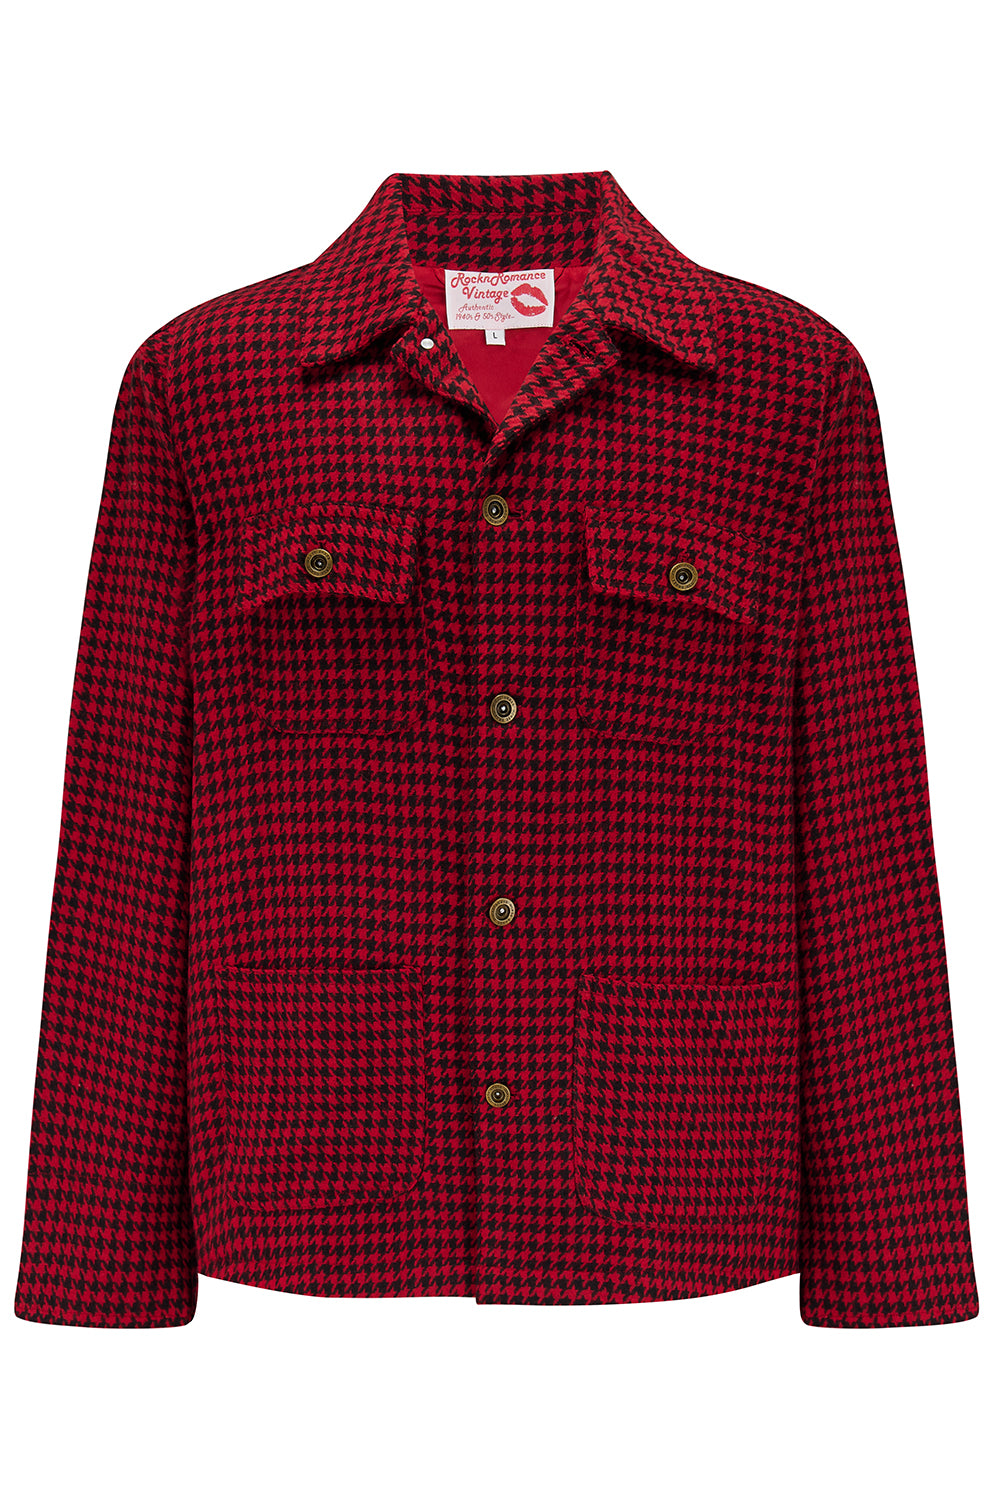 Die Herren-Arbeitsjacke „Bronson“ mit Hahnentrittmuster in Rot/Schwarz, Außenmaterial aus 100 % Wolle. Rockabilly-Vintage-Stil der 1950er Jahre